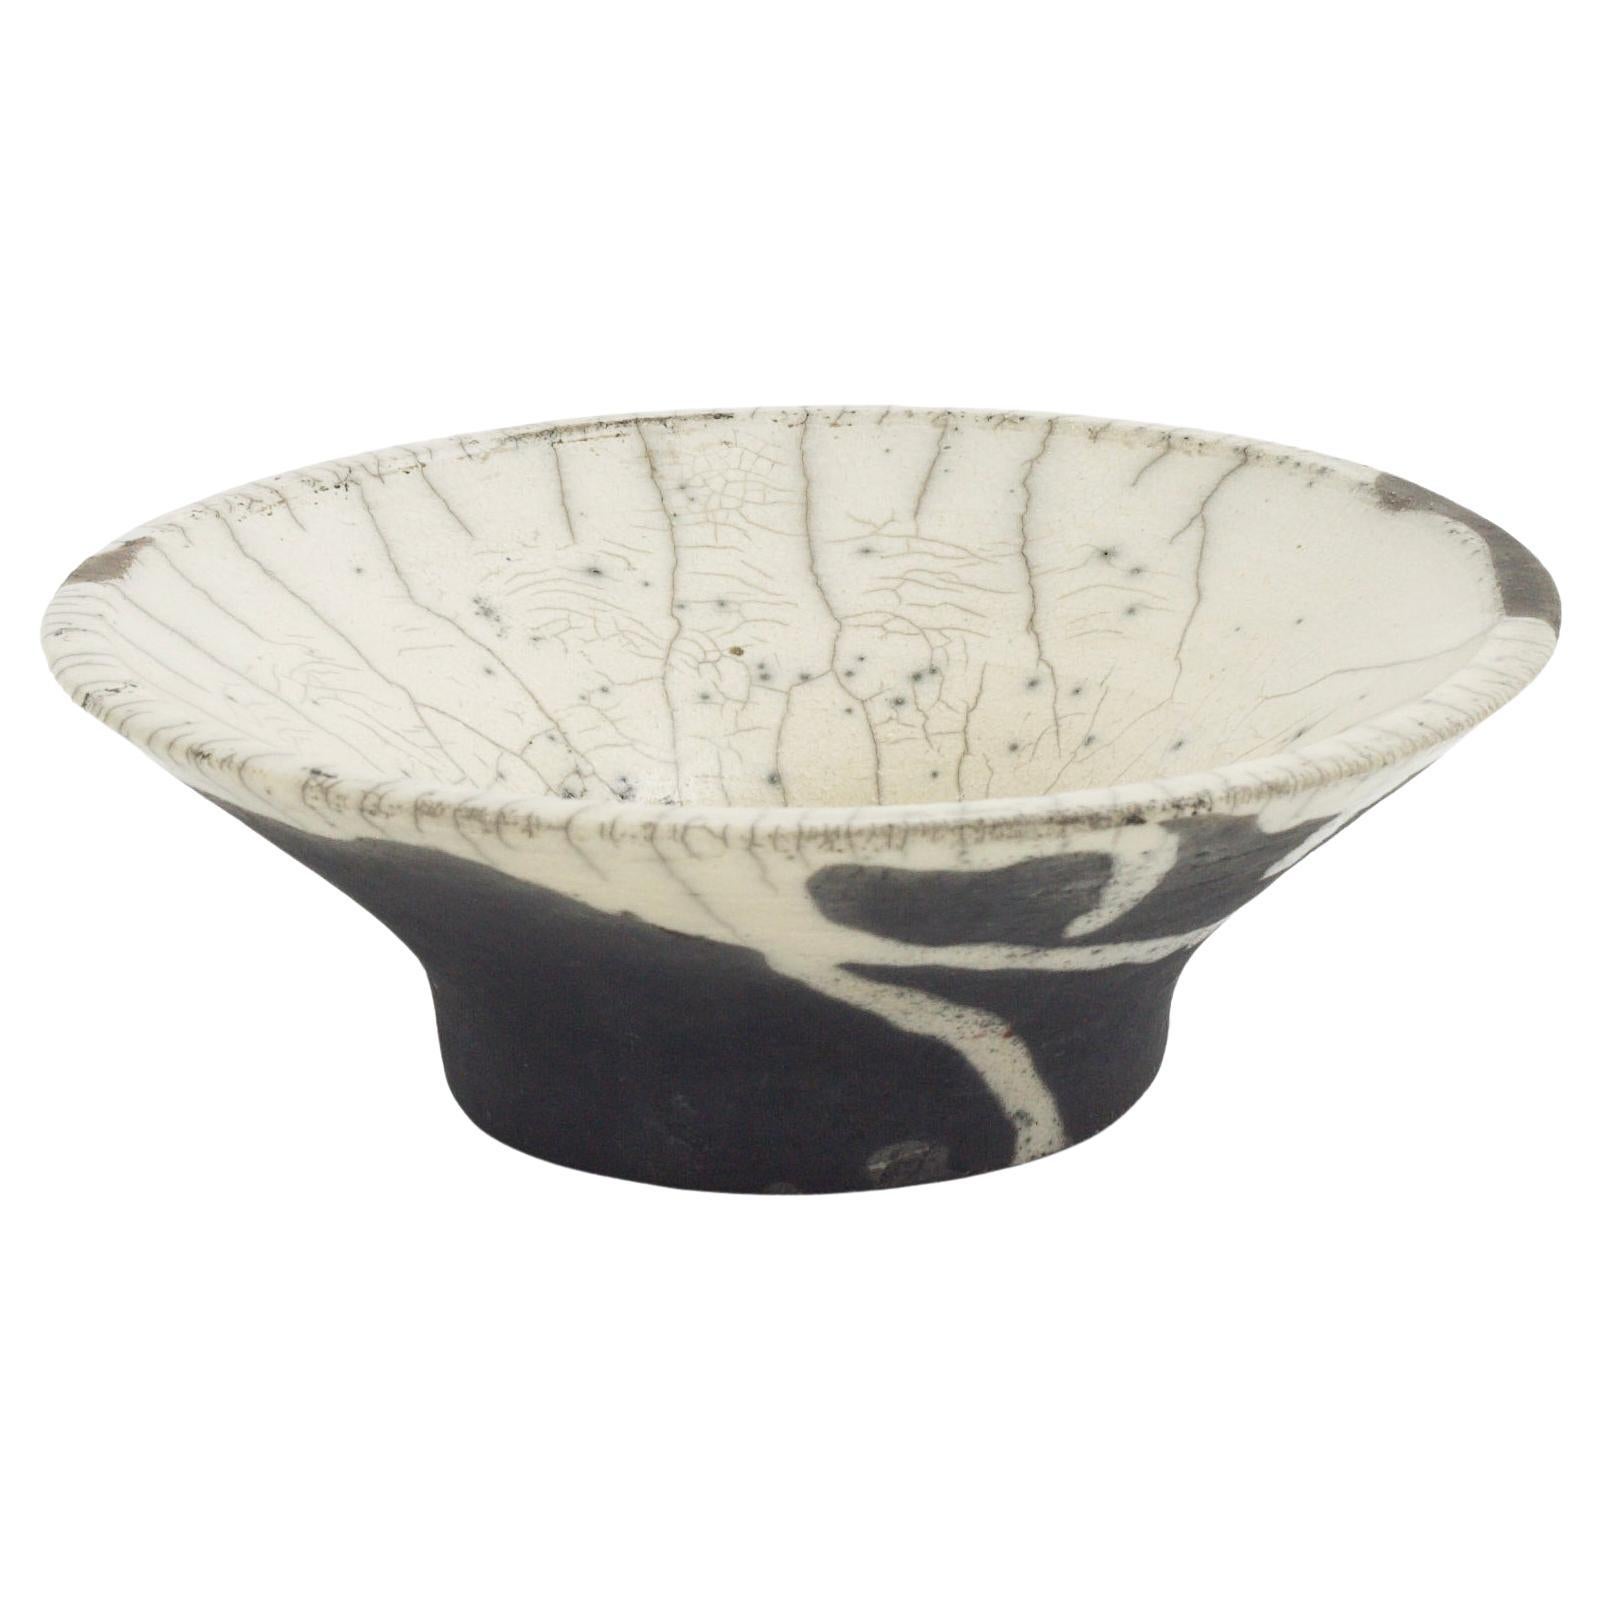 Japanese Modern LAAB Cratere Vase Raku Ceramic Black White Crakle Spiral